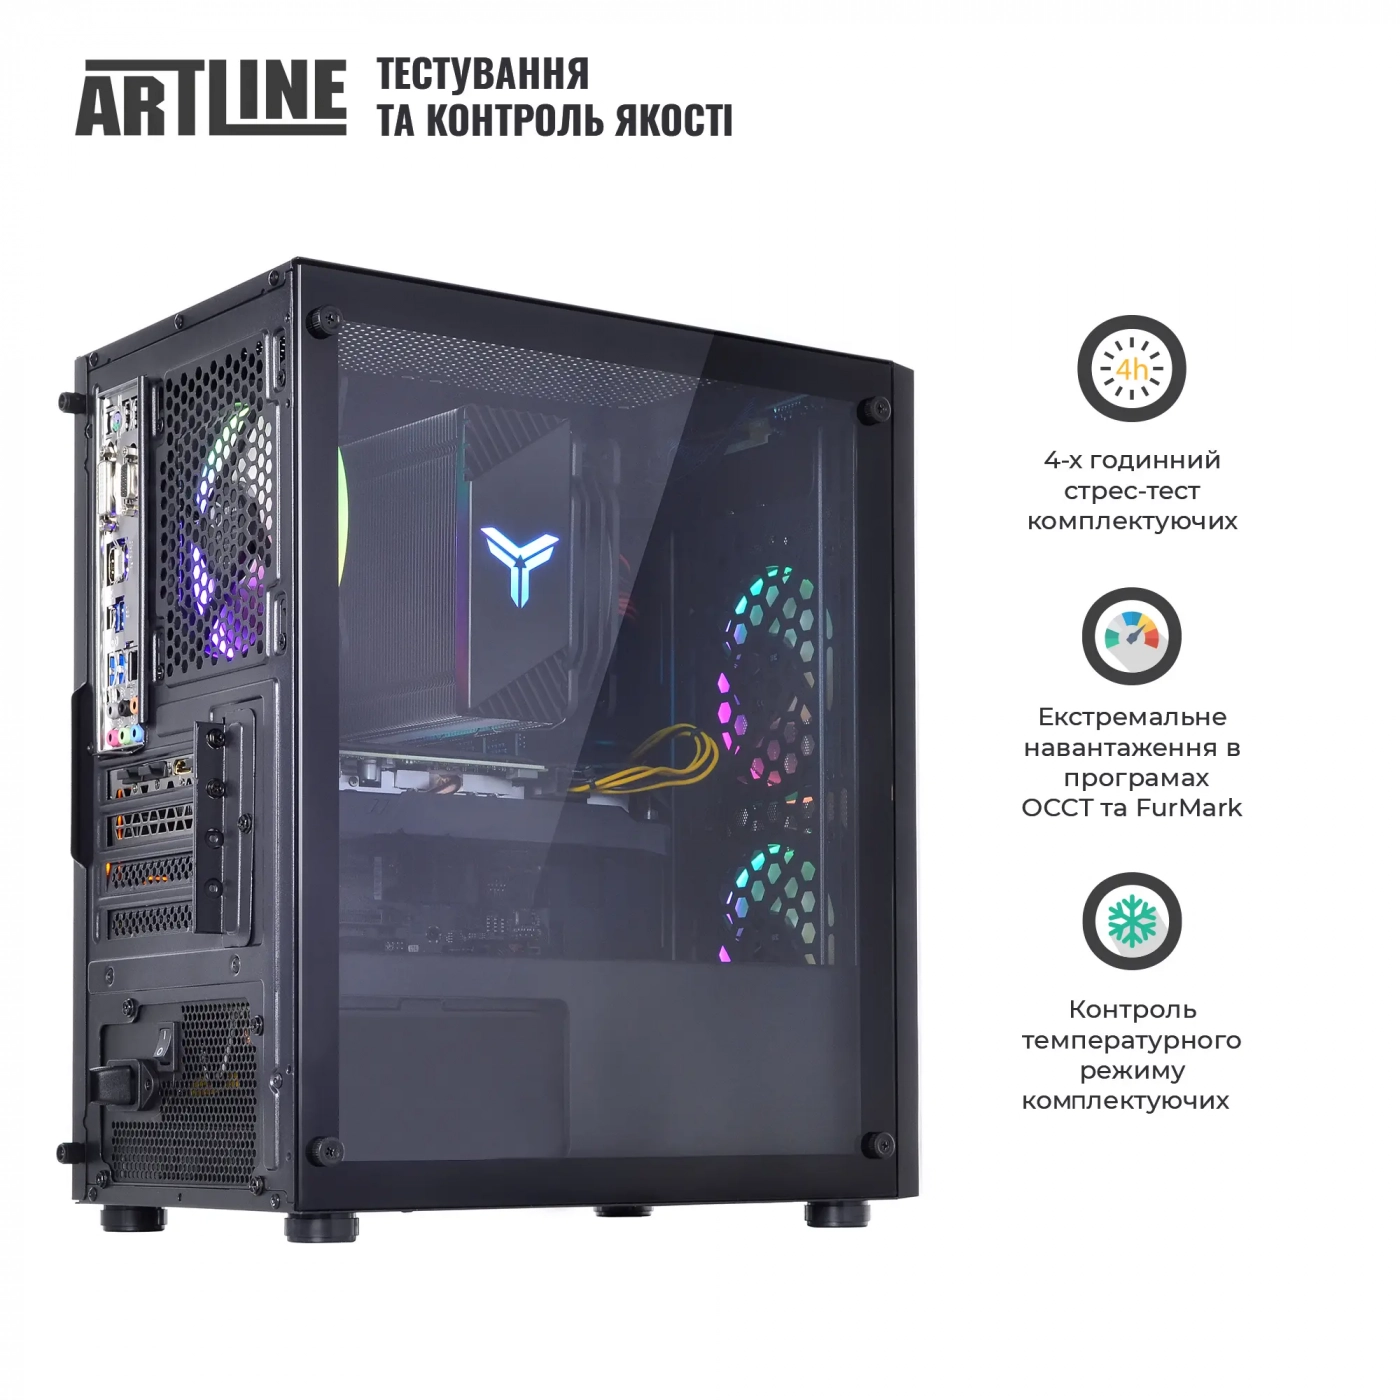 Купить Компьютер ARTLINE Gaming X61v19 - фото 8